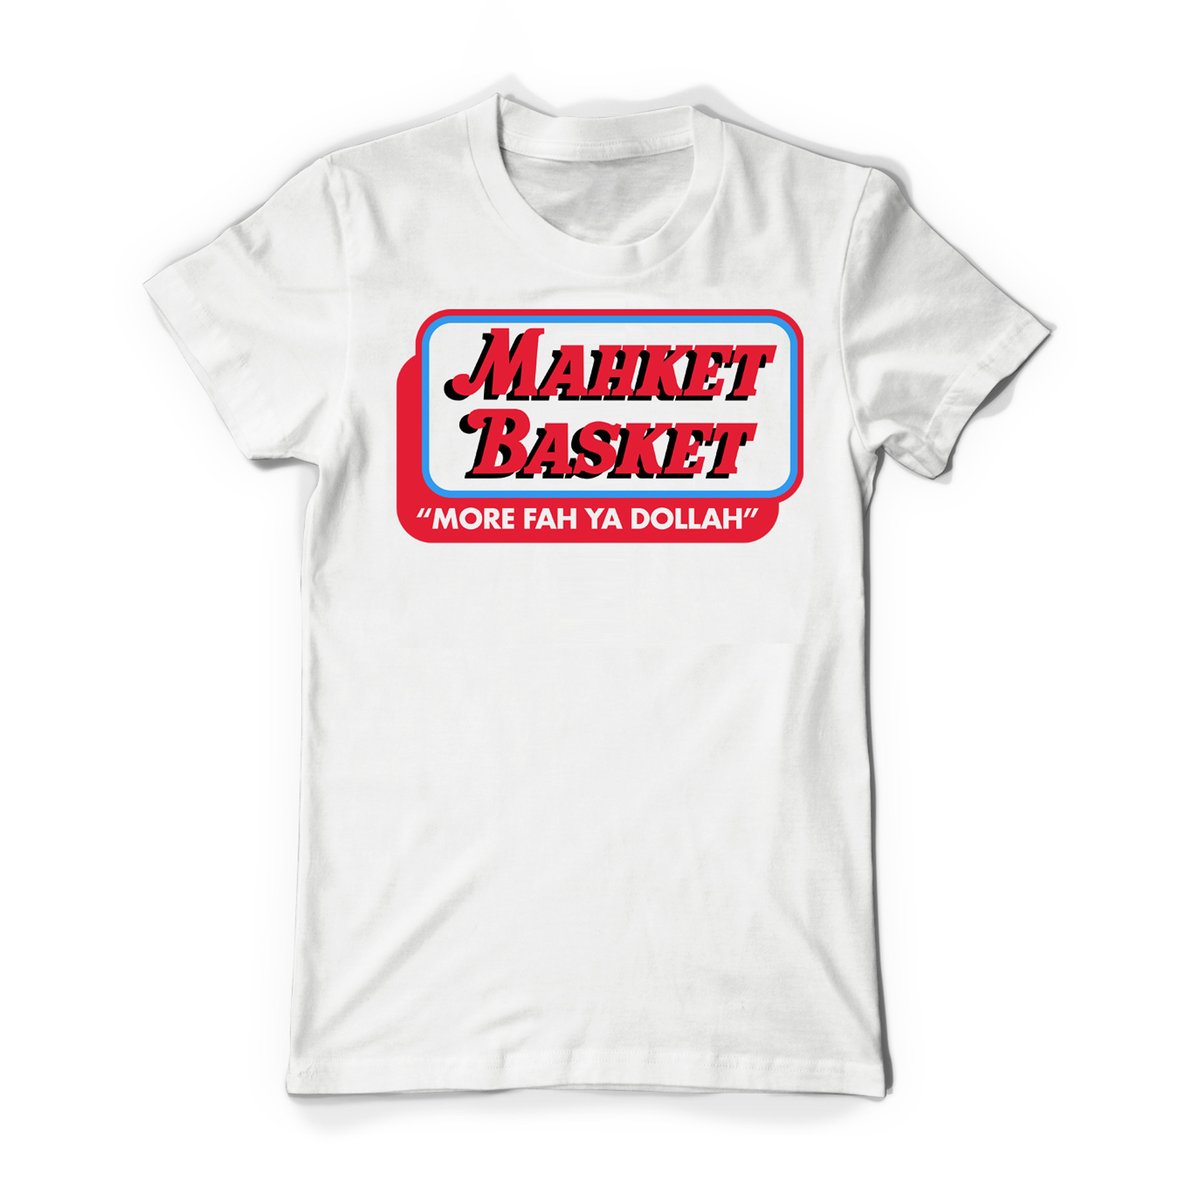 Mahket Basket T-Shirt